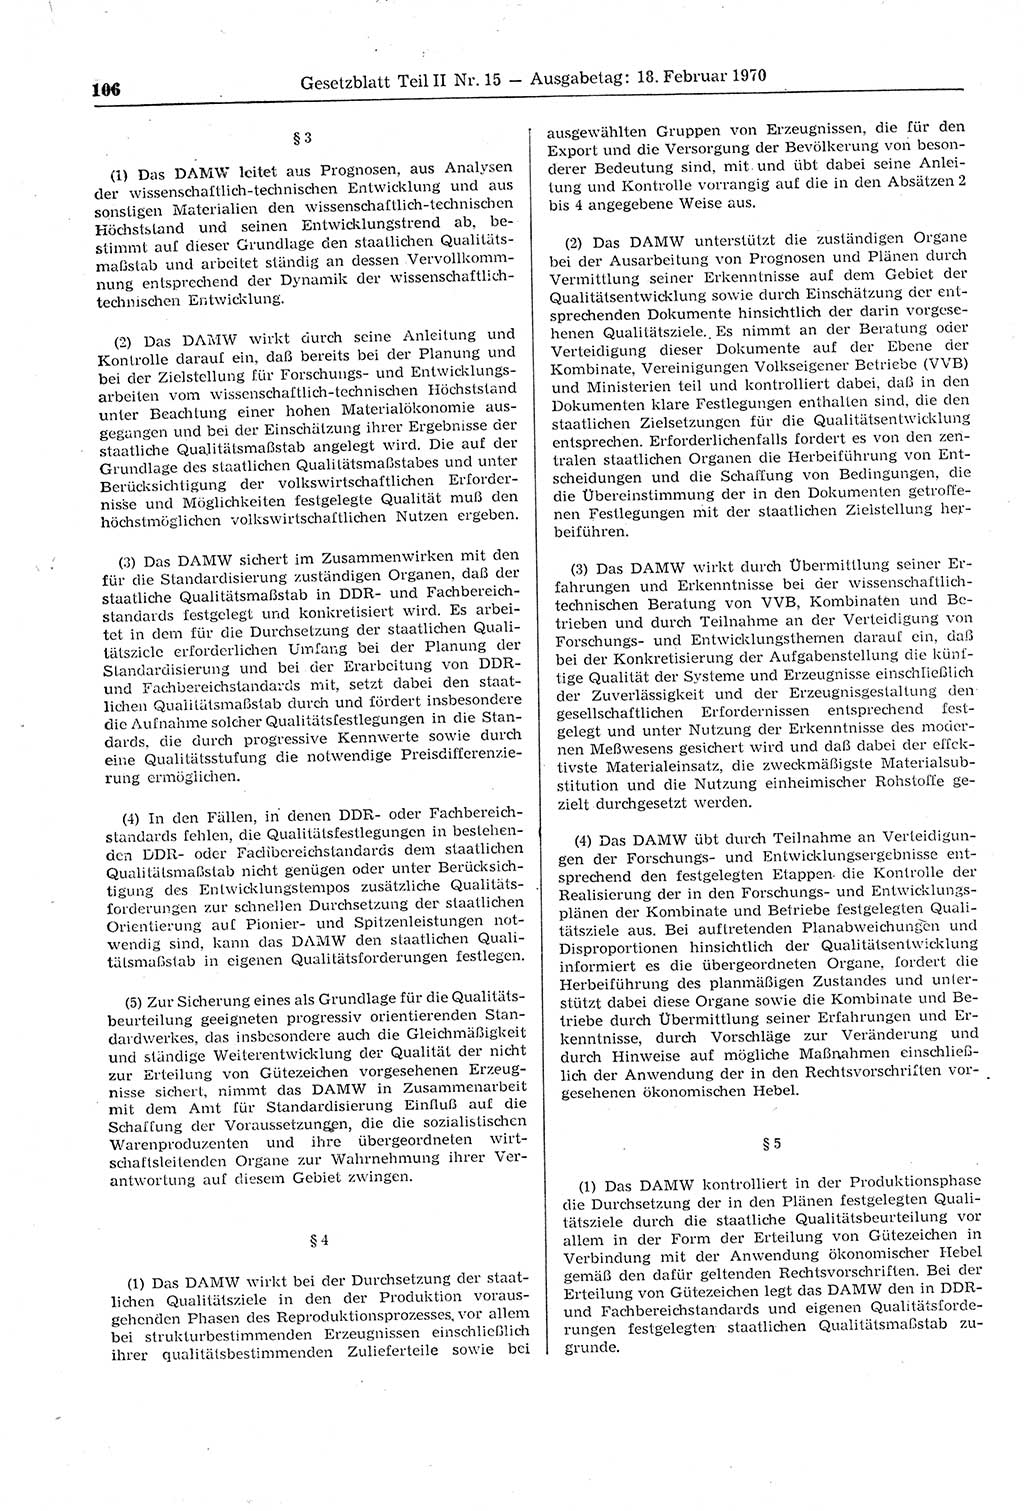 Gesetzblatt (GBl.) der Deutschen Demokratischen Republik (DDR) Teil ⅠⅠ 1970, Seite 106 (GBl. DDR ⅠⅠ 1970, S. 106)